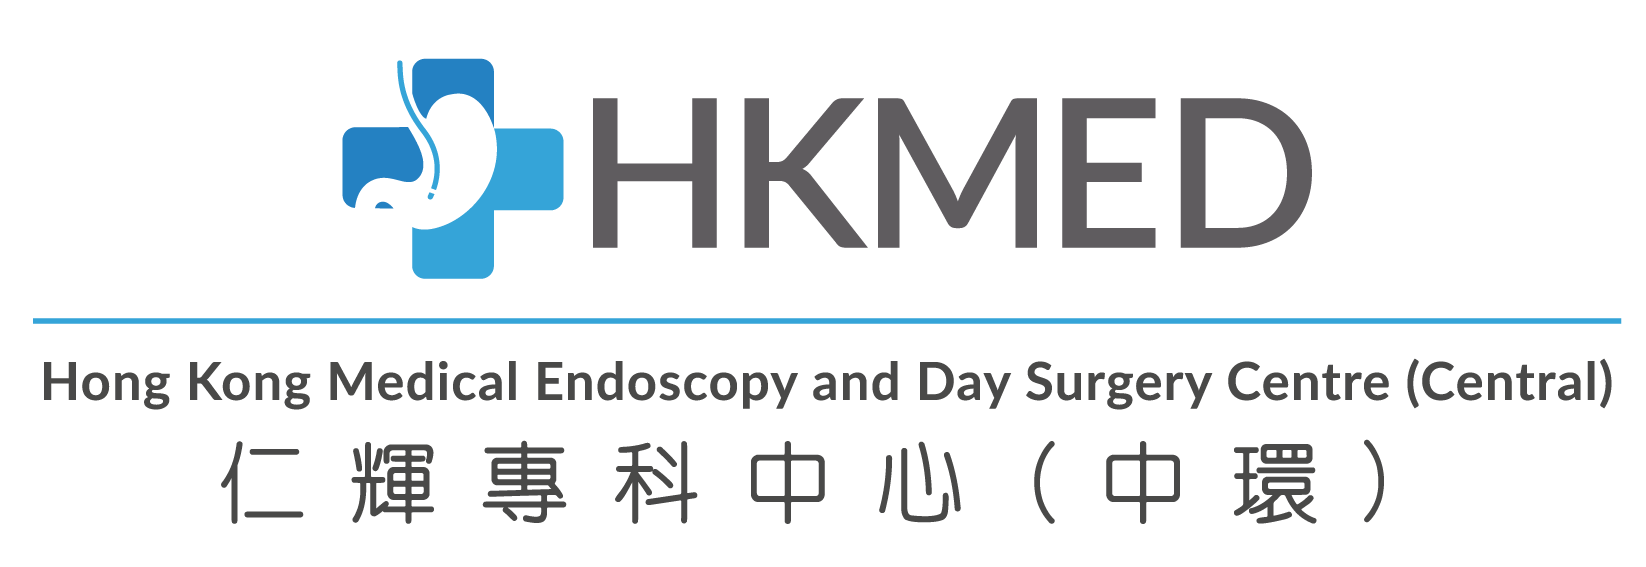 HKMED Central Logo